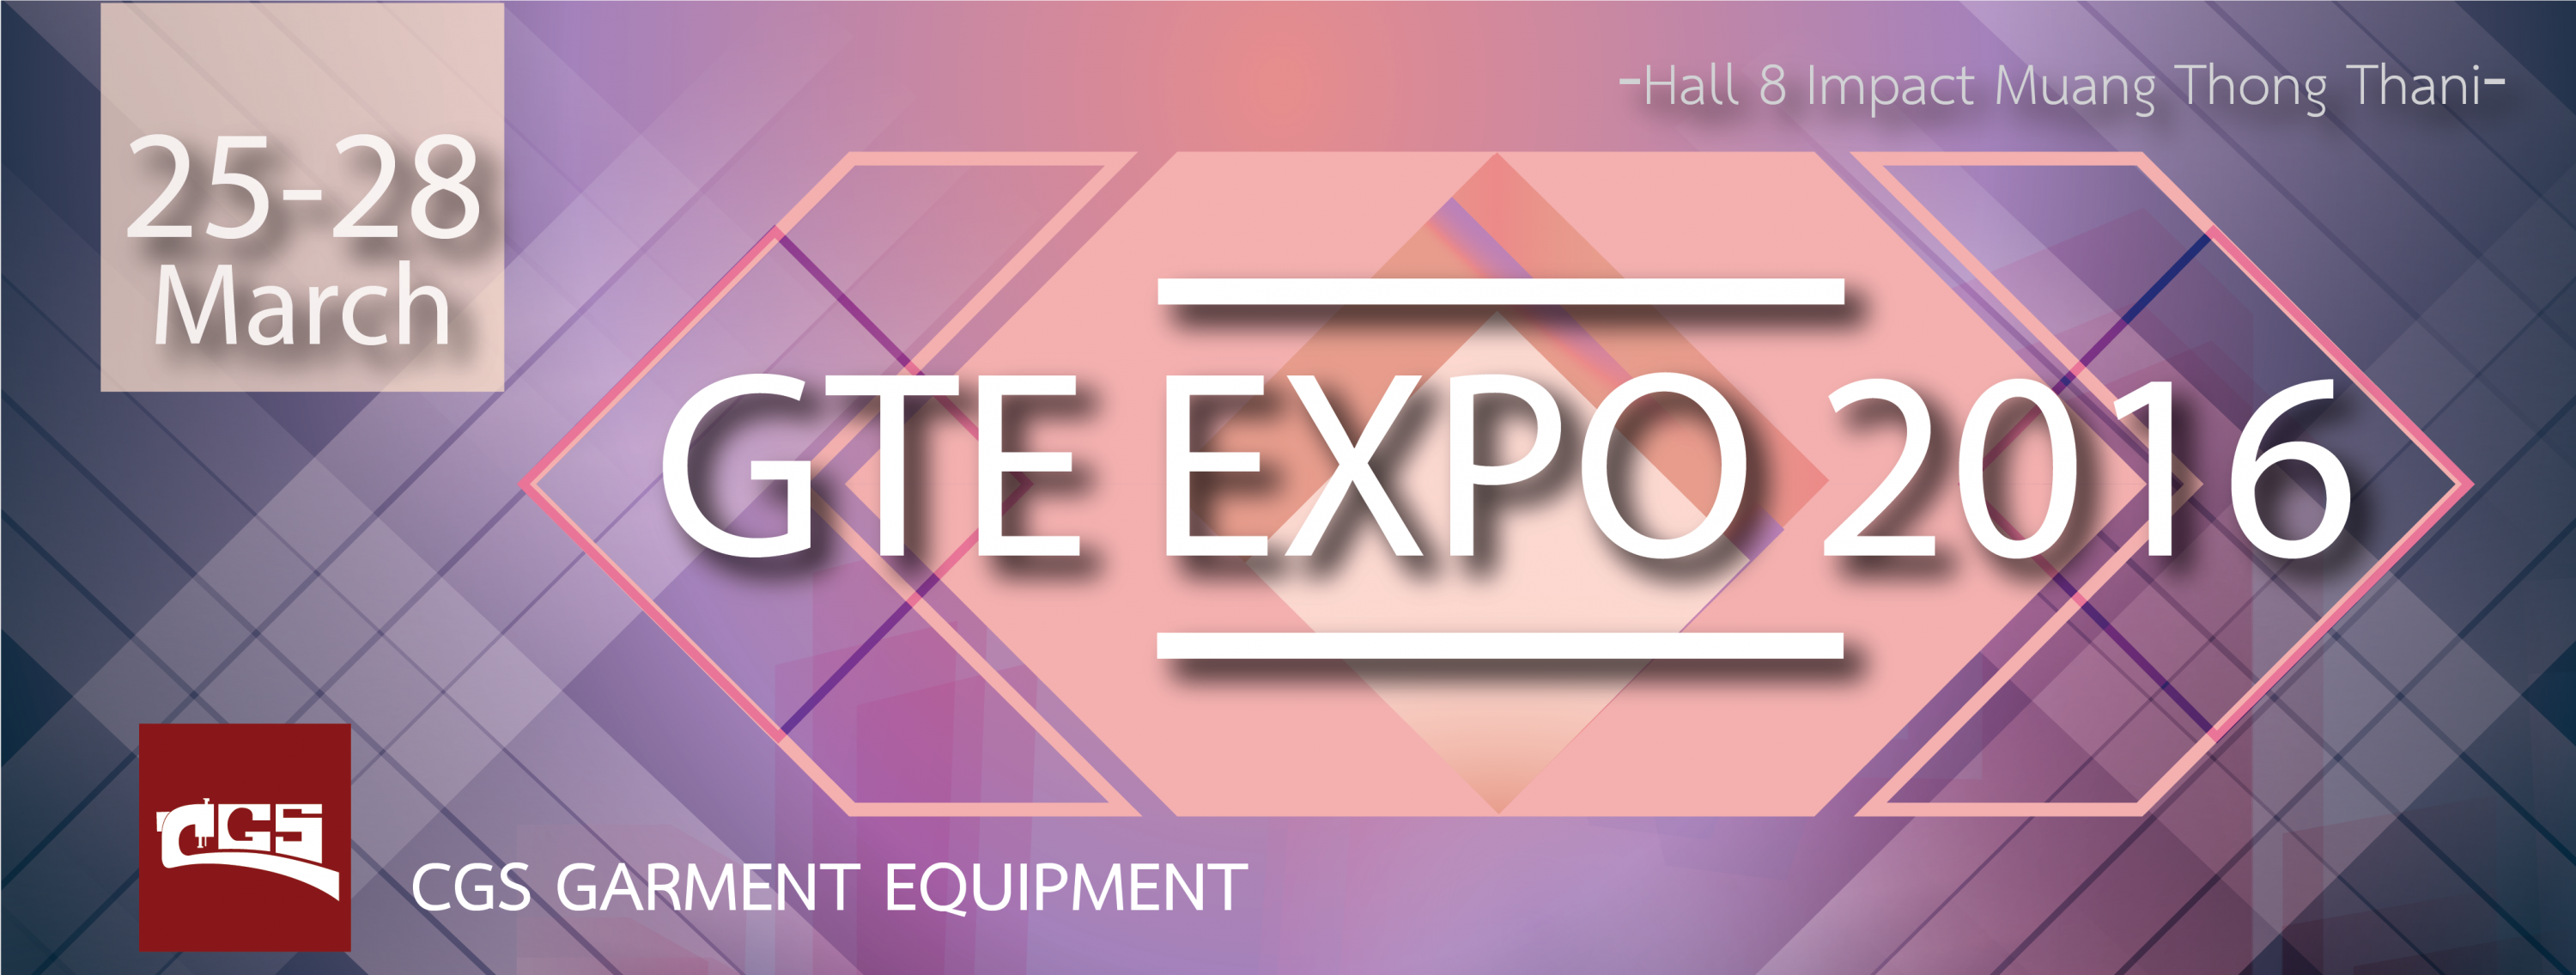 GTE EXPO 2016 วันที่ 25 - 28 มีนาคม Hall 8 อิมแพค เมืองทองธานี